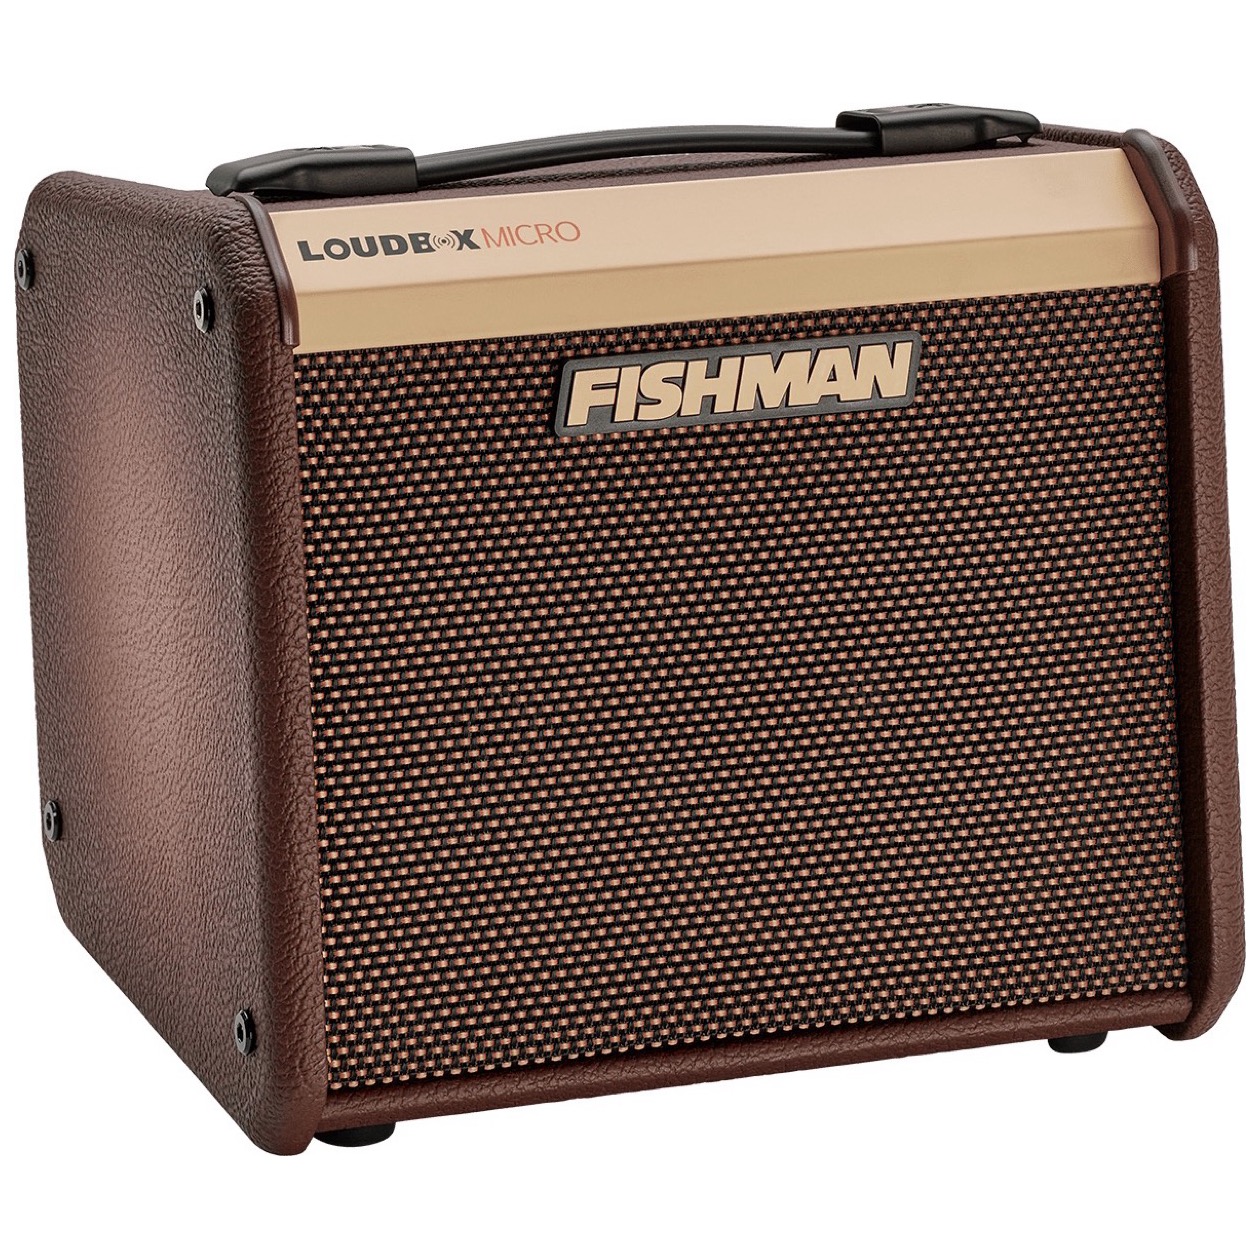 Fishman Loudbox Pro LBT 400 Micro 40 Watt Akoestische Gitaar Versterker NIEUW 2024 MODEL IN VOORRAAD, BLACK FRIDAY 2024 AANBIEDING!